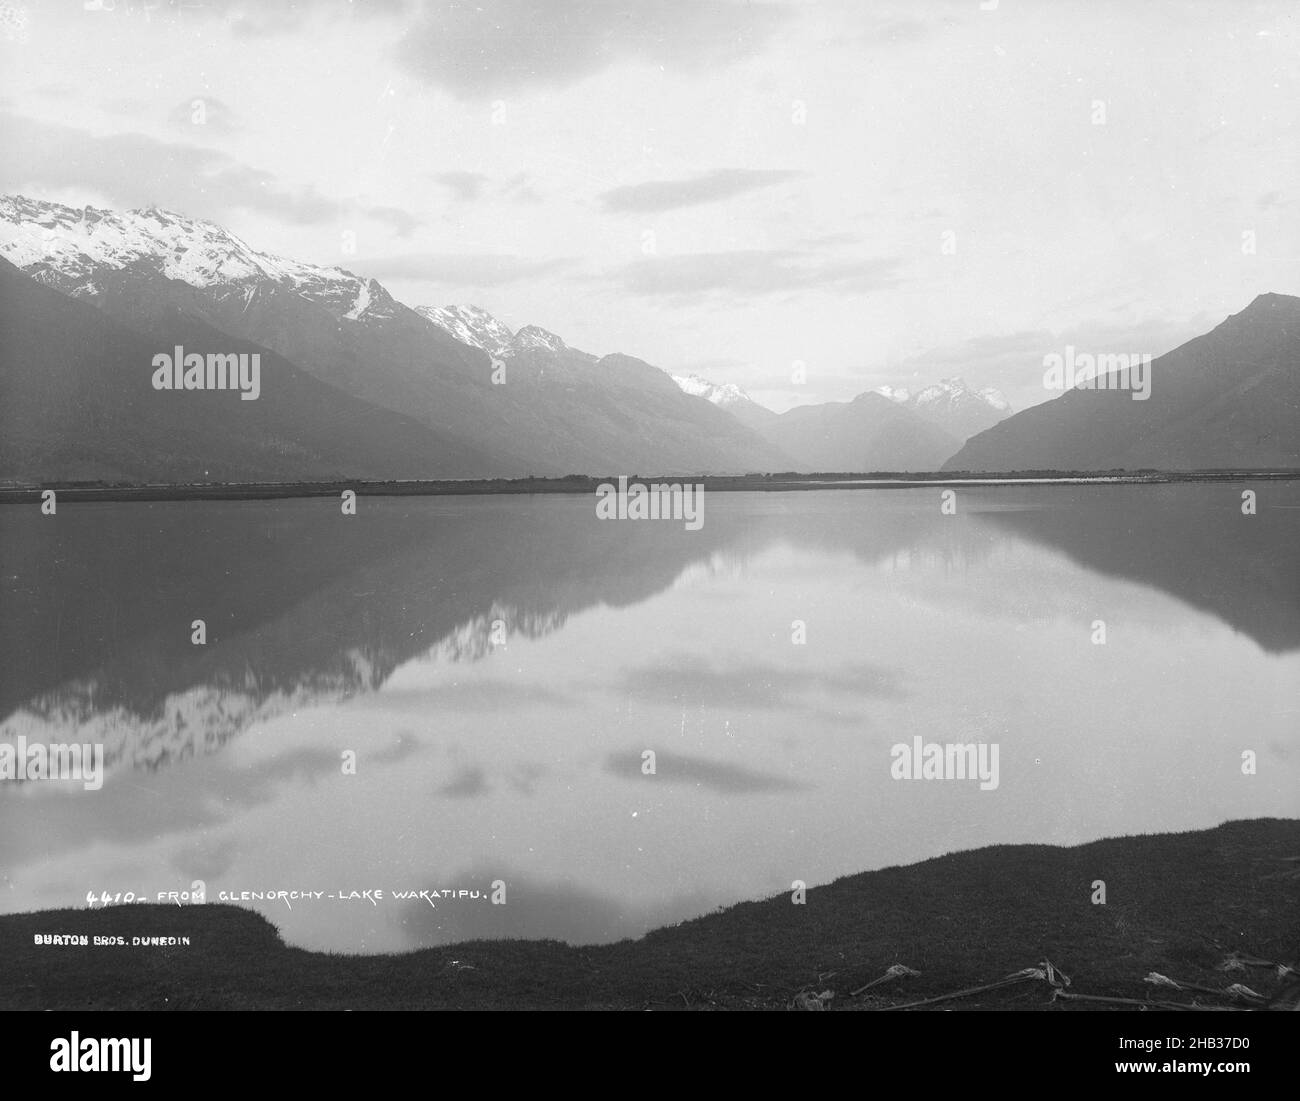 Da Glenorchy, Lake Wakatipu, studio Burton Brothers, studio fotografico, 1886, Dunedin, fotografia in bianco e nero, vista attraverso le acque calme e pianeggianti di un lago, con una catena montuosa innevata che corre sulla sinistra Foto Stock